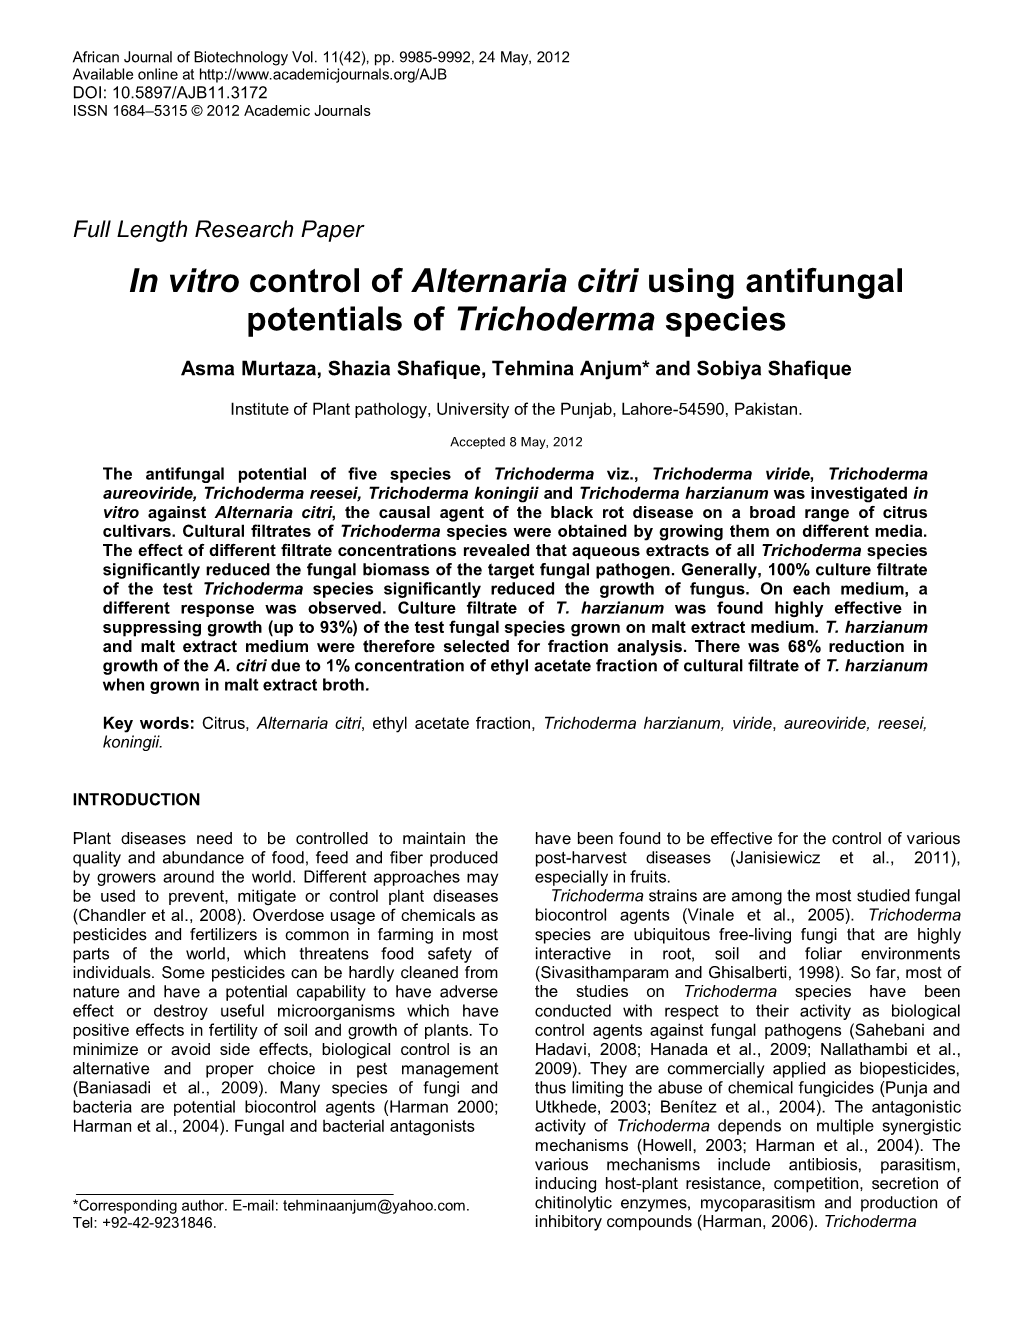 In Vitro Control of Alternaria Citri Using Antifungal Potentials of Trichoderma Species